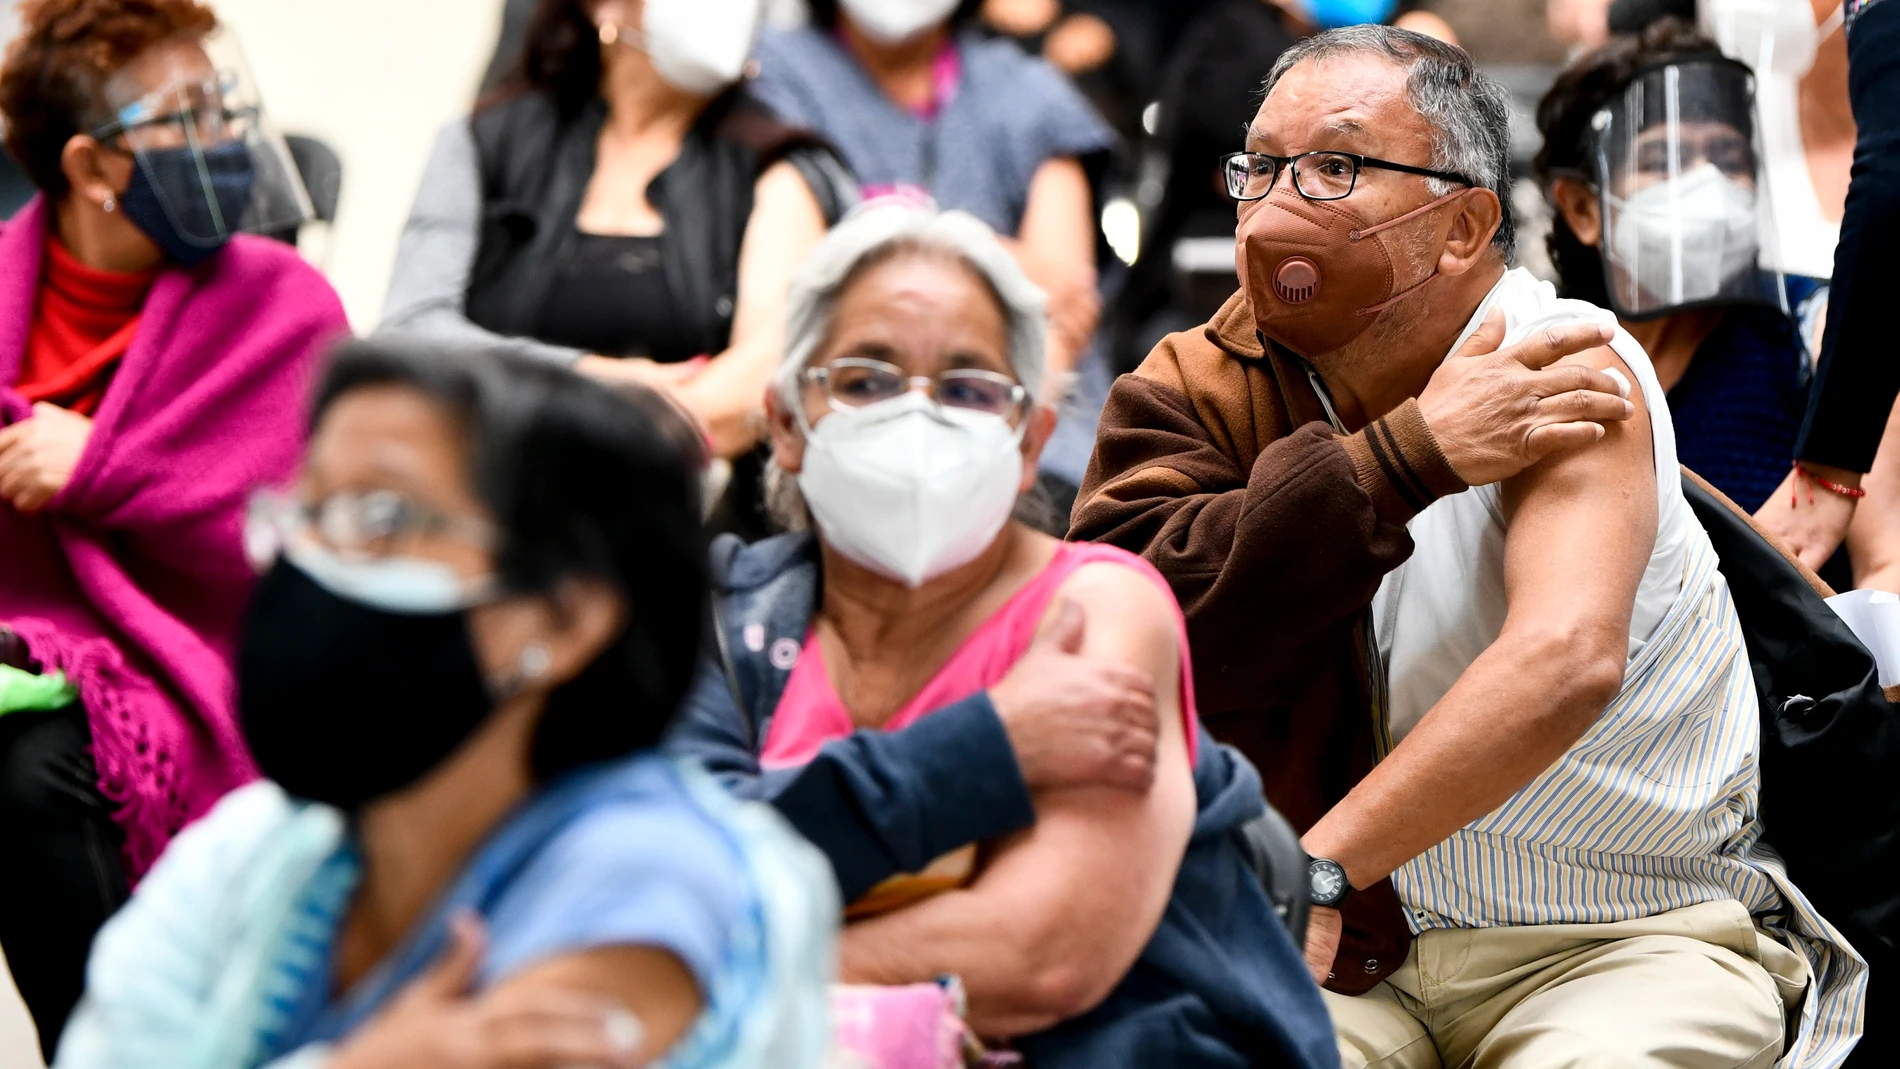 Ciudadanos vacunados con el inmunizador de Sinovac en Ecatepec, México.XIN YUEWEI / XINHUA NEWS / CONTACTOPHOTO25/02/2021 ONLY FOR USE IN SPAIN